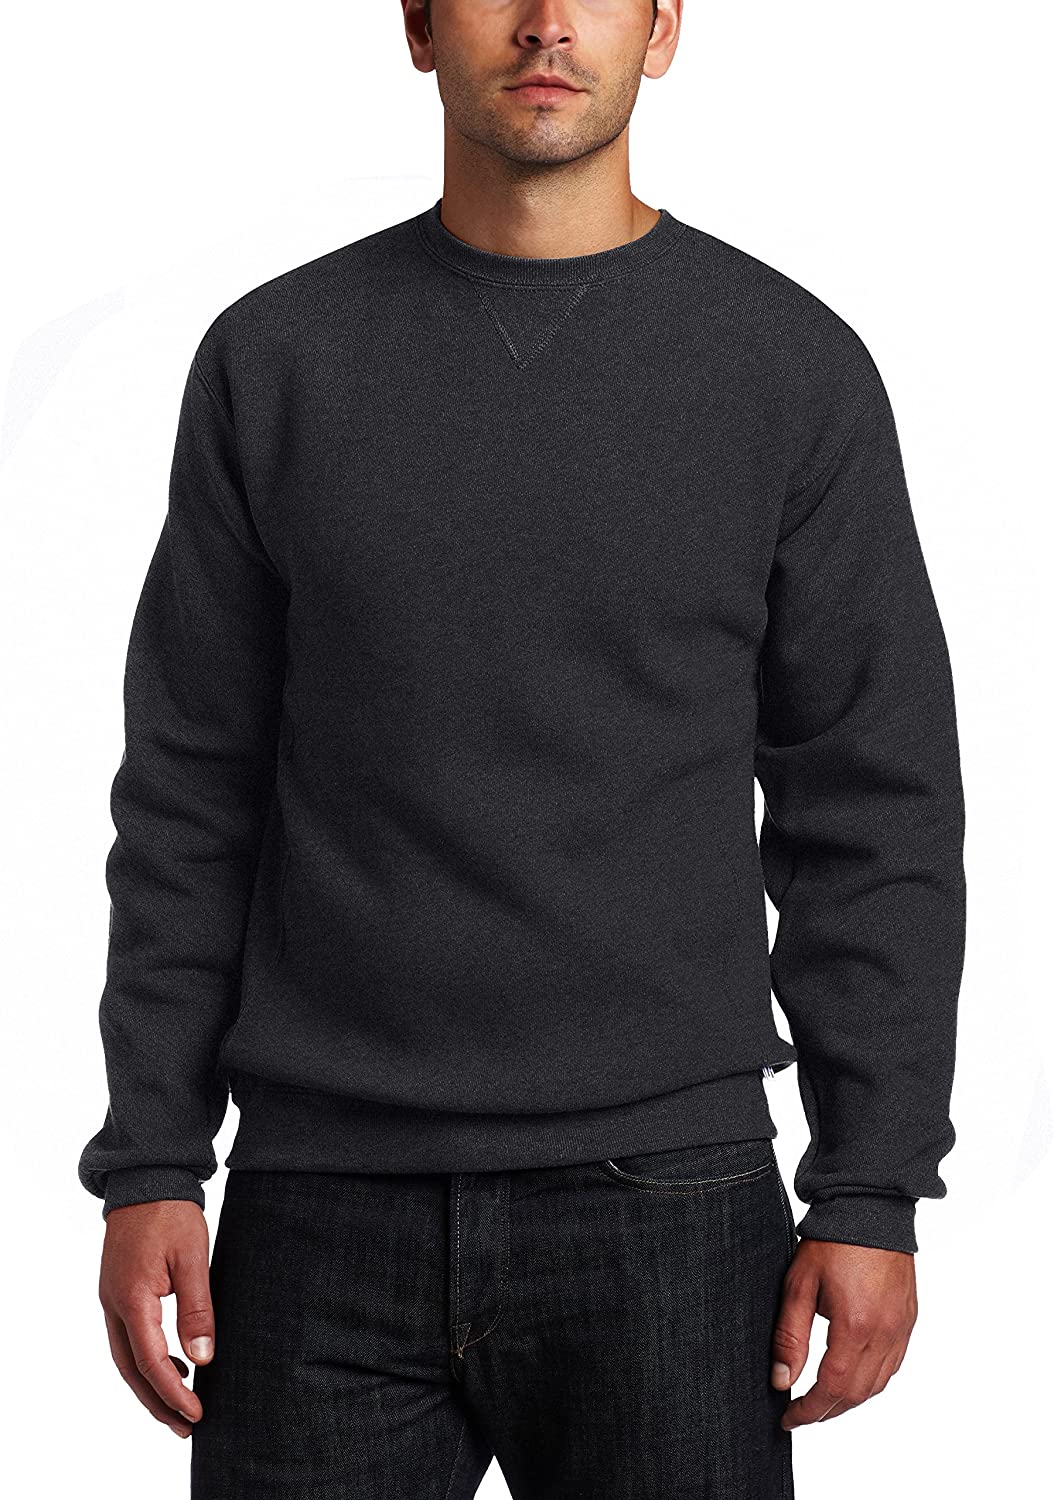 Nouveau RUSSELL Dri-Power Crewneck Sweatshirt Tailles Adultes a été 24.95 